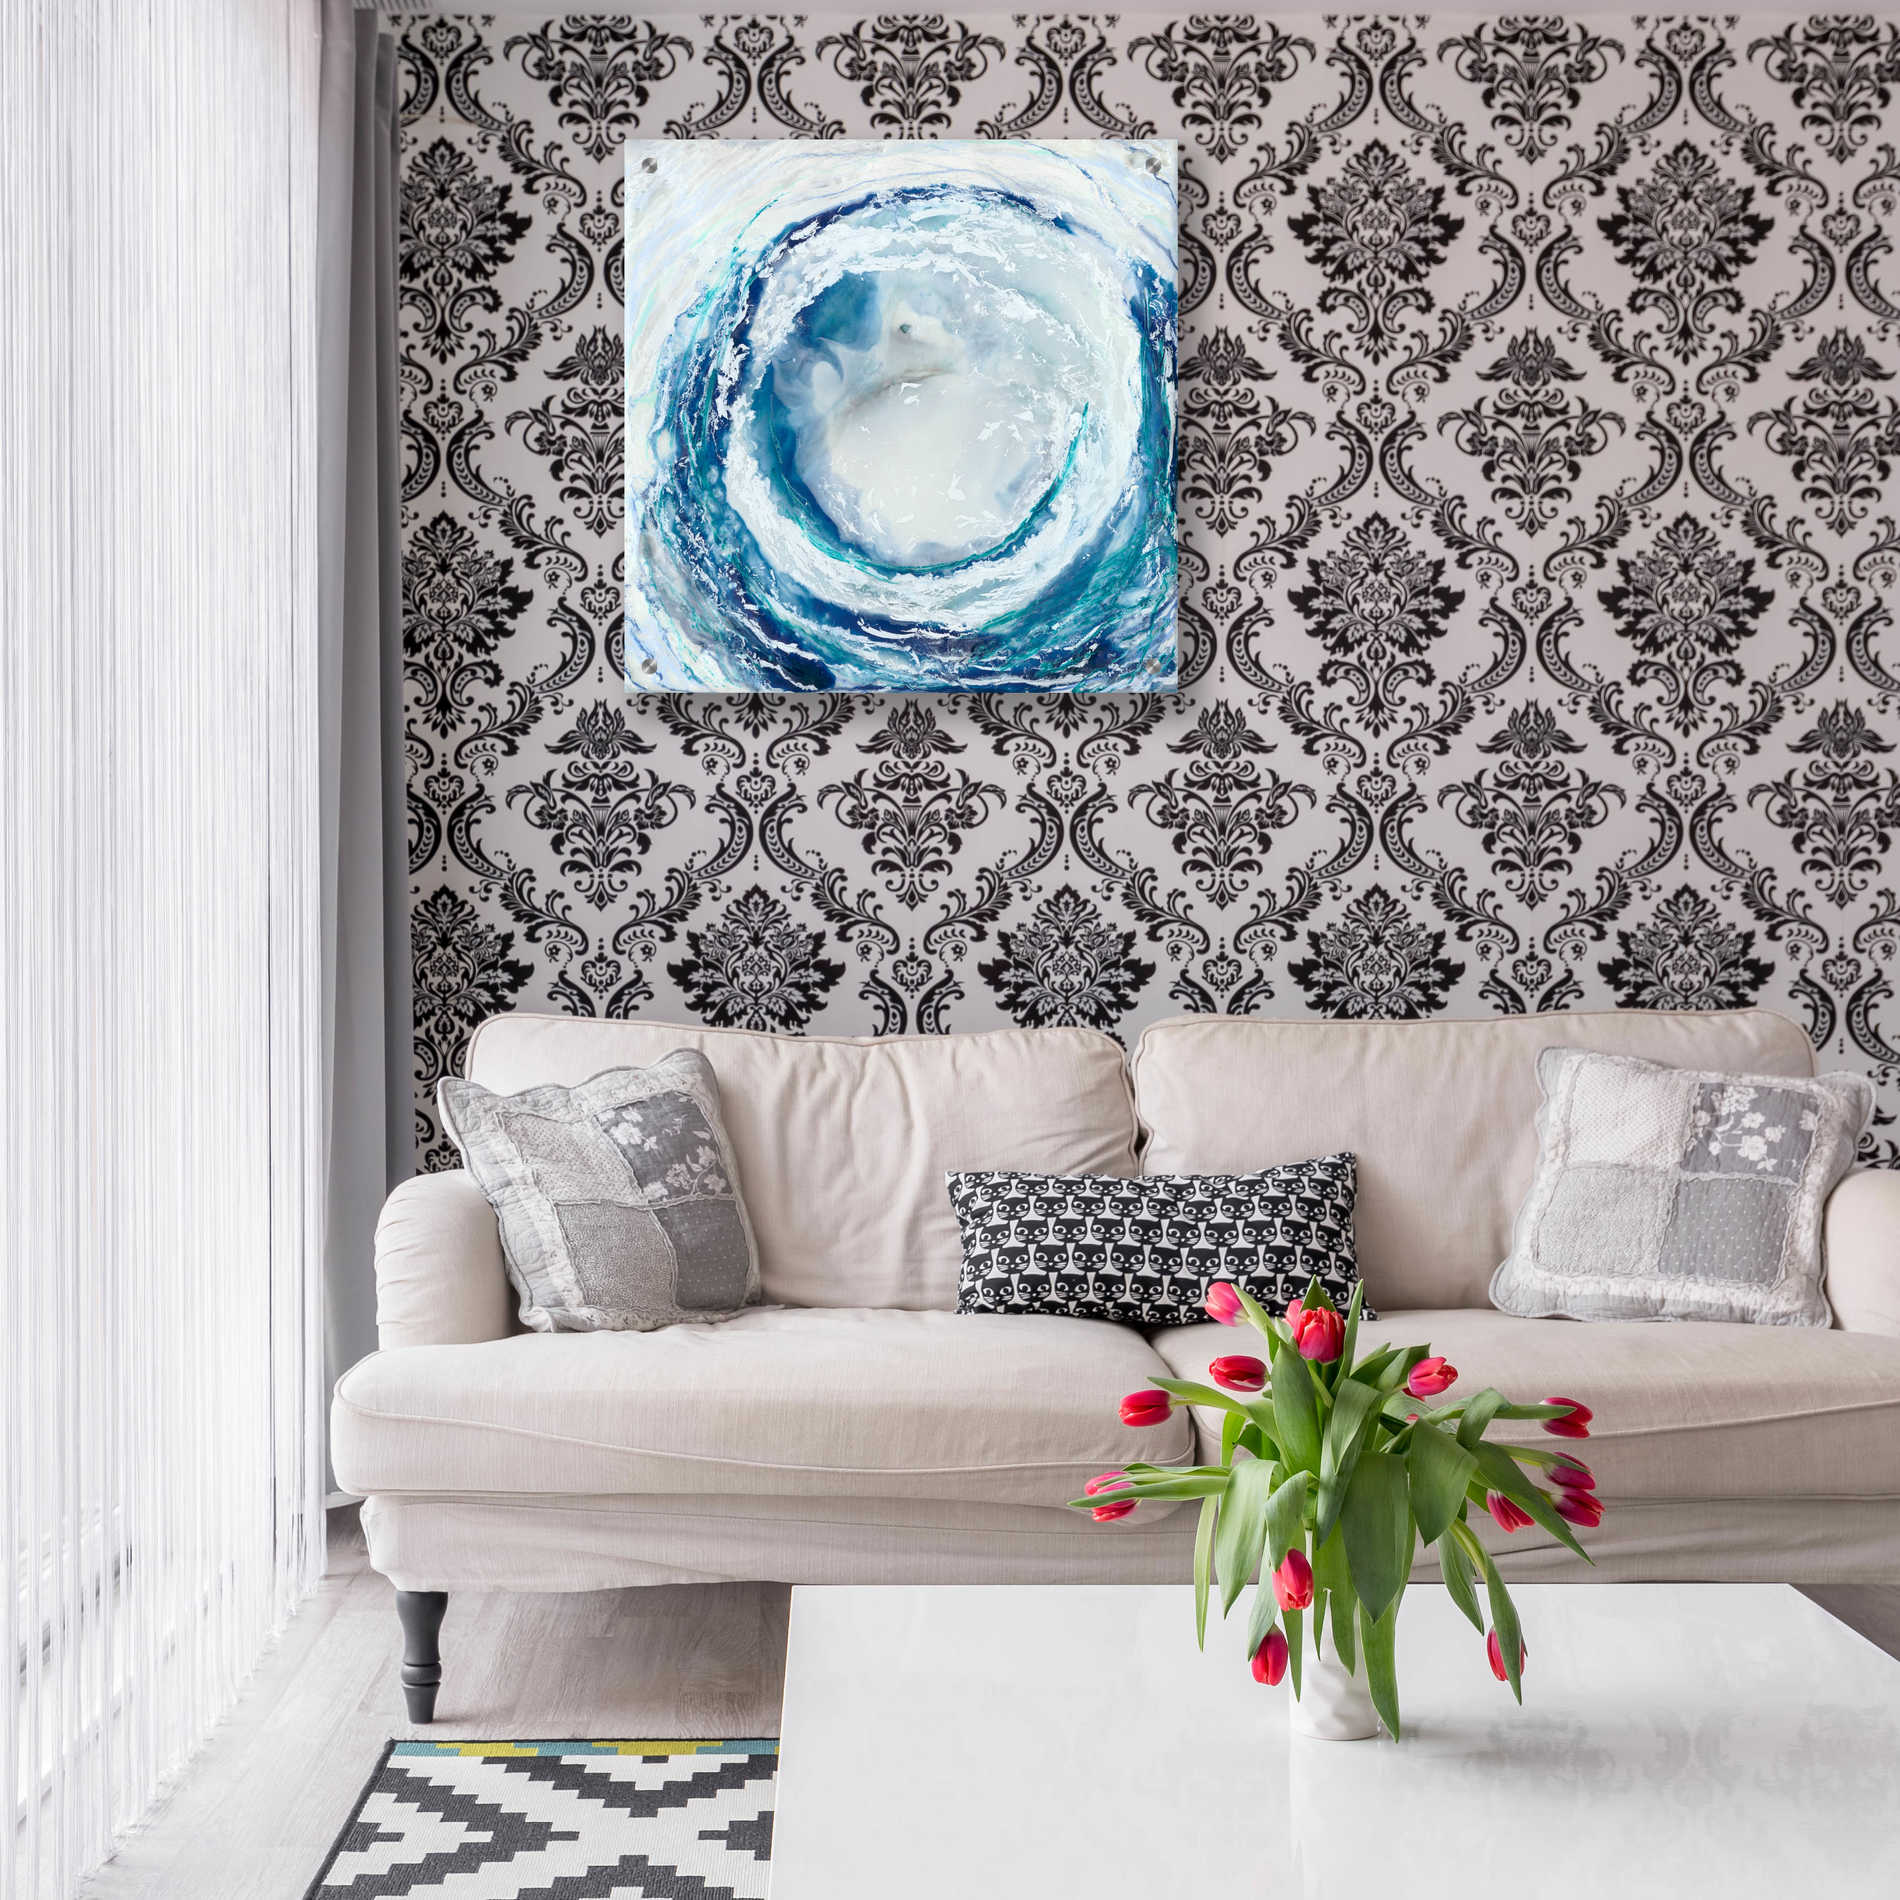 Epic Art 'Ocean Eye II' by Renee W Stramel, Acrylic Glass Wall Art,24x24